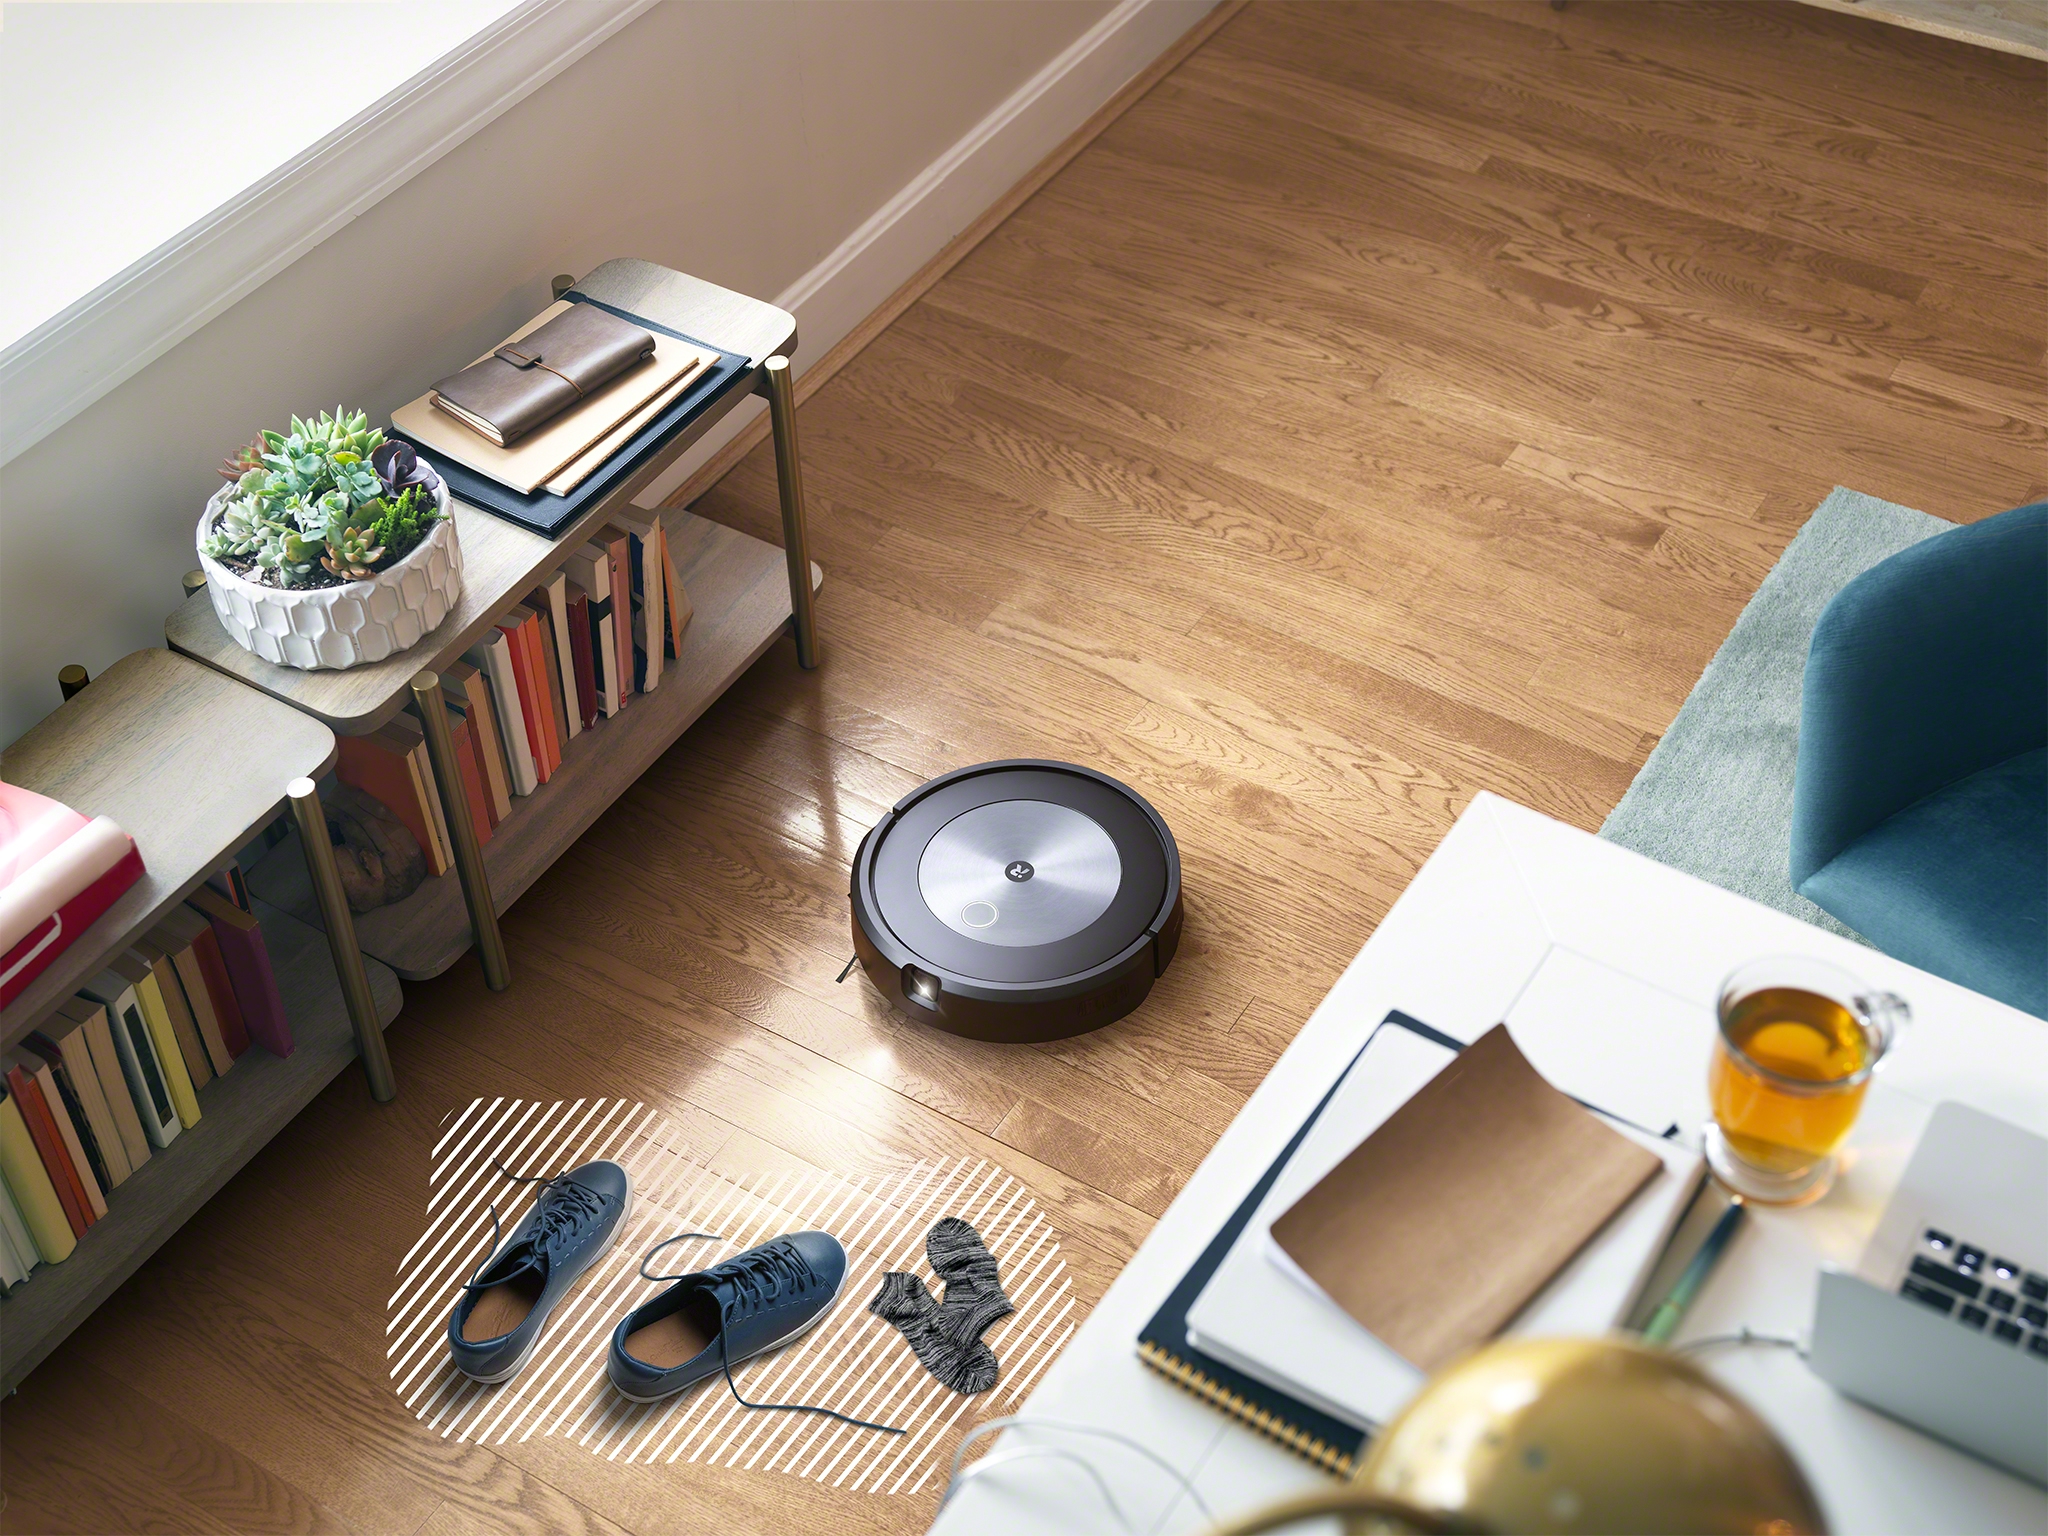  iRobot® Roomba® j7 - Robot aspirador conectado Wi-Fi®  Identifica y evita obstáculos, funciona con Alexa, ideal para alfombras +  piezas de repuesto auténticas, bolsas de eliminación de suciedad  automáticas de base